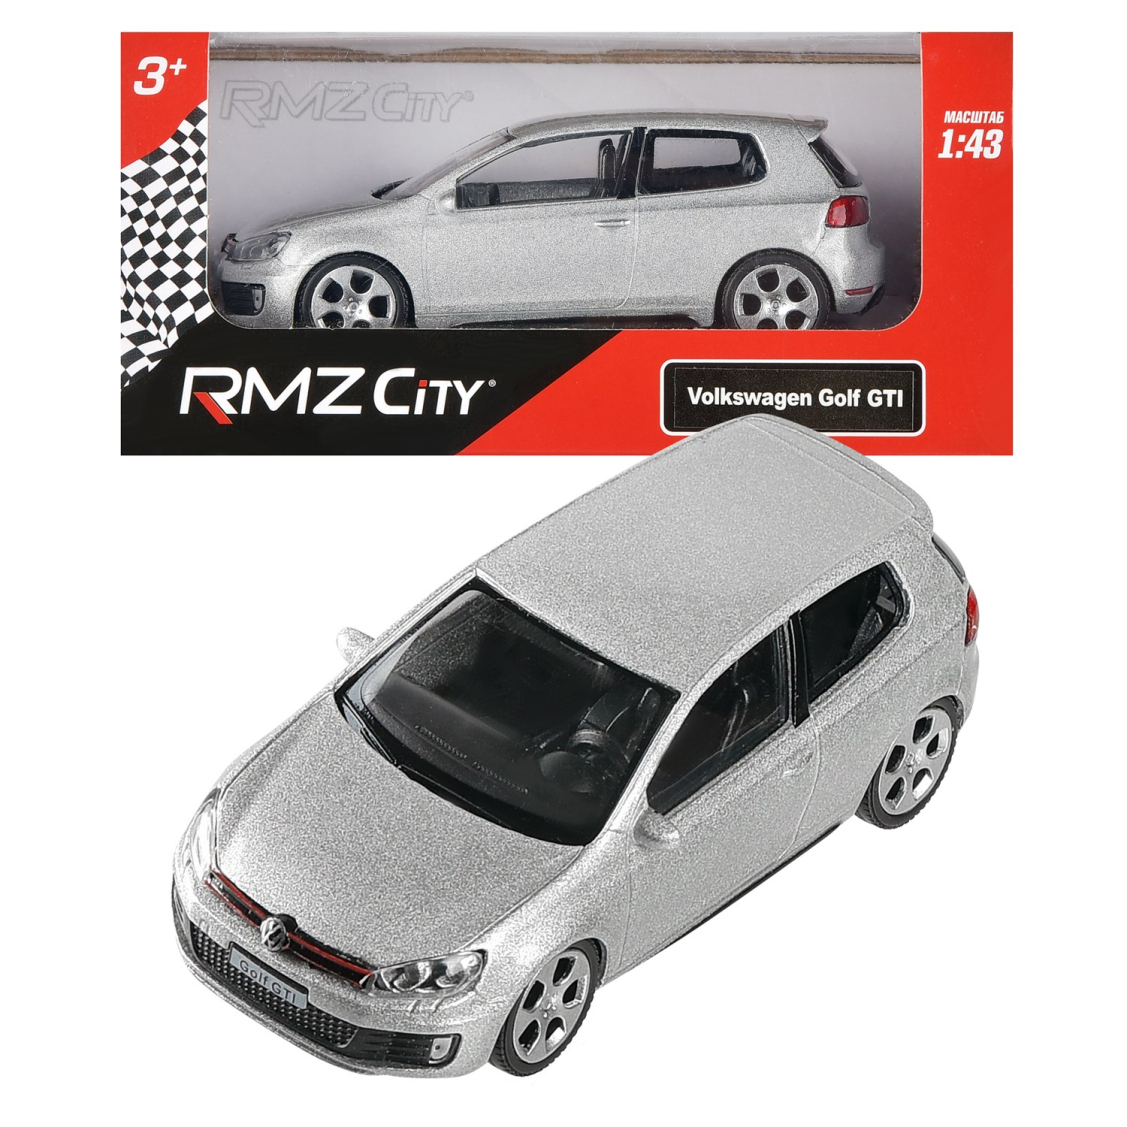 Машинка металлическая Uni-Fortune RMZ City 1:43 4" VW Golf GTI